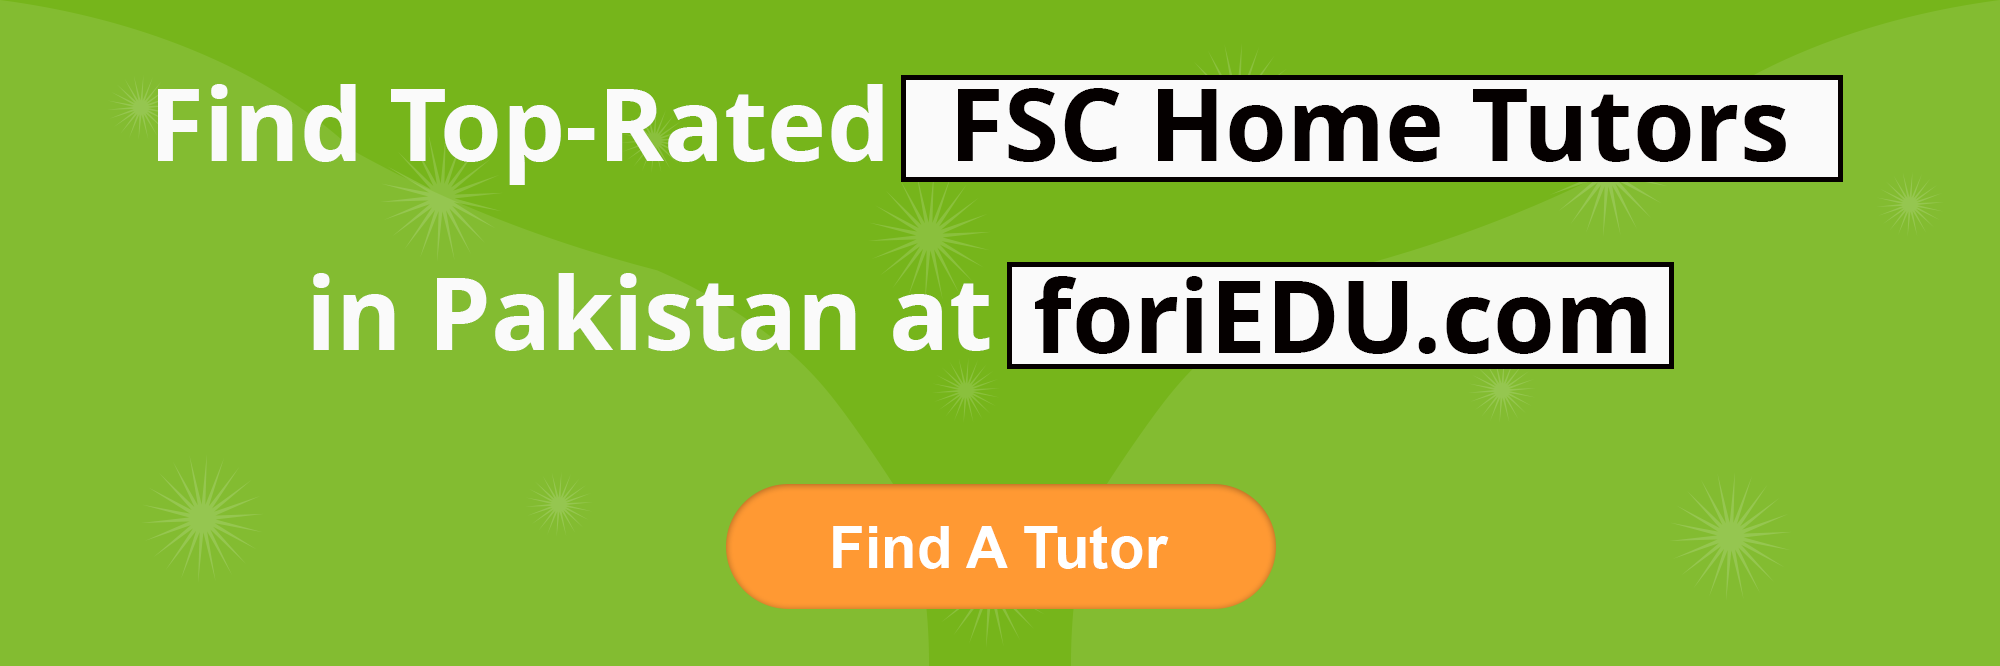 FSC Home Tutors in Pakistan 3